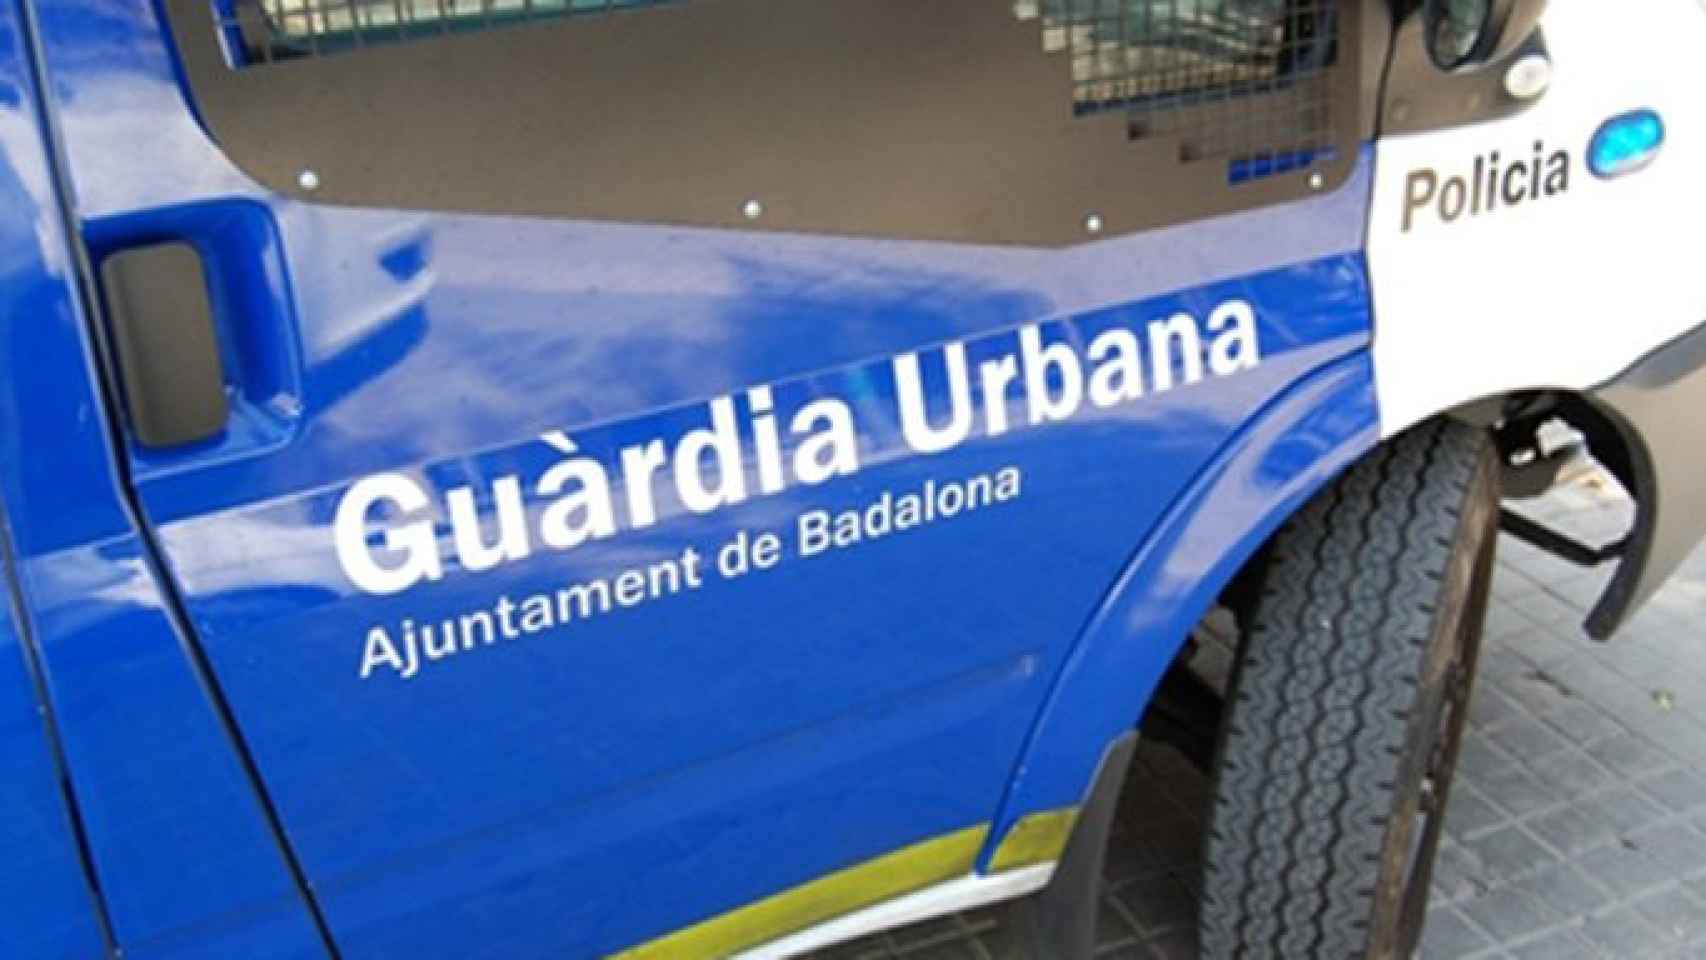 Vehículo de la Guardia Urbana de Badalona / CG